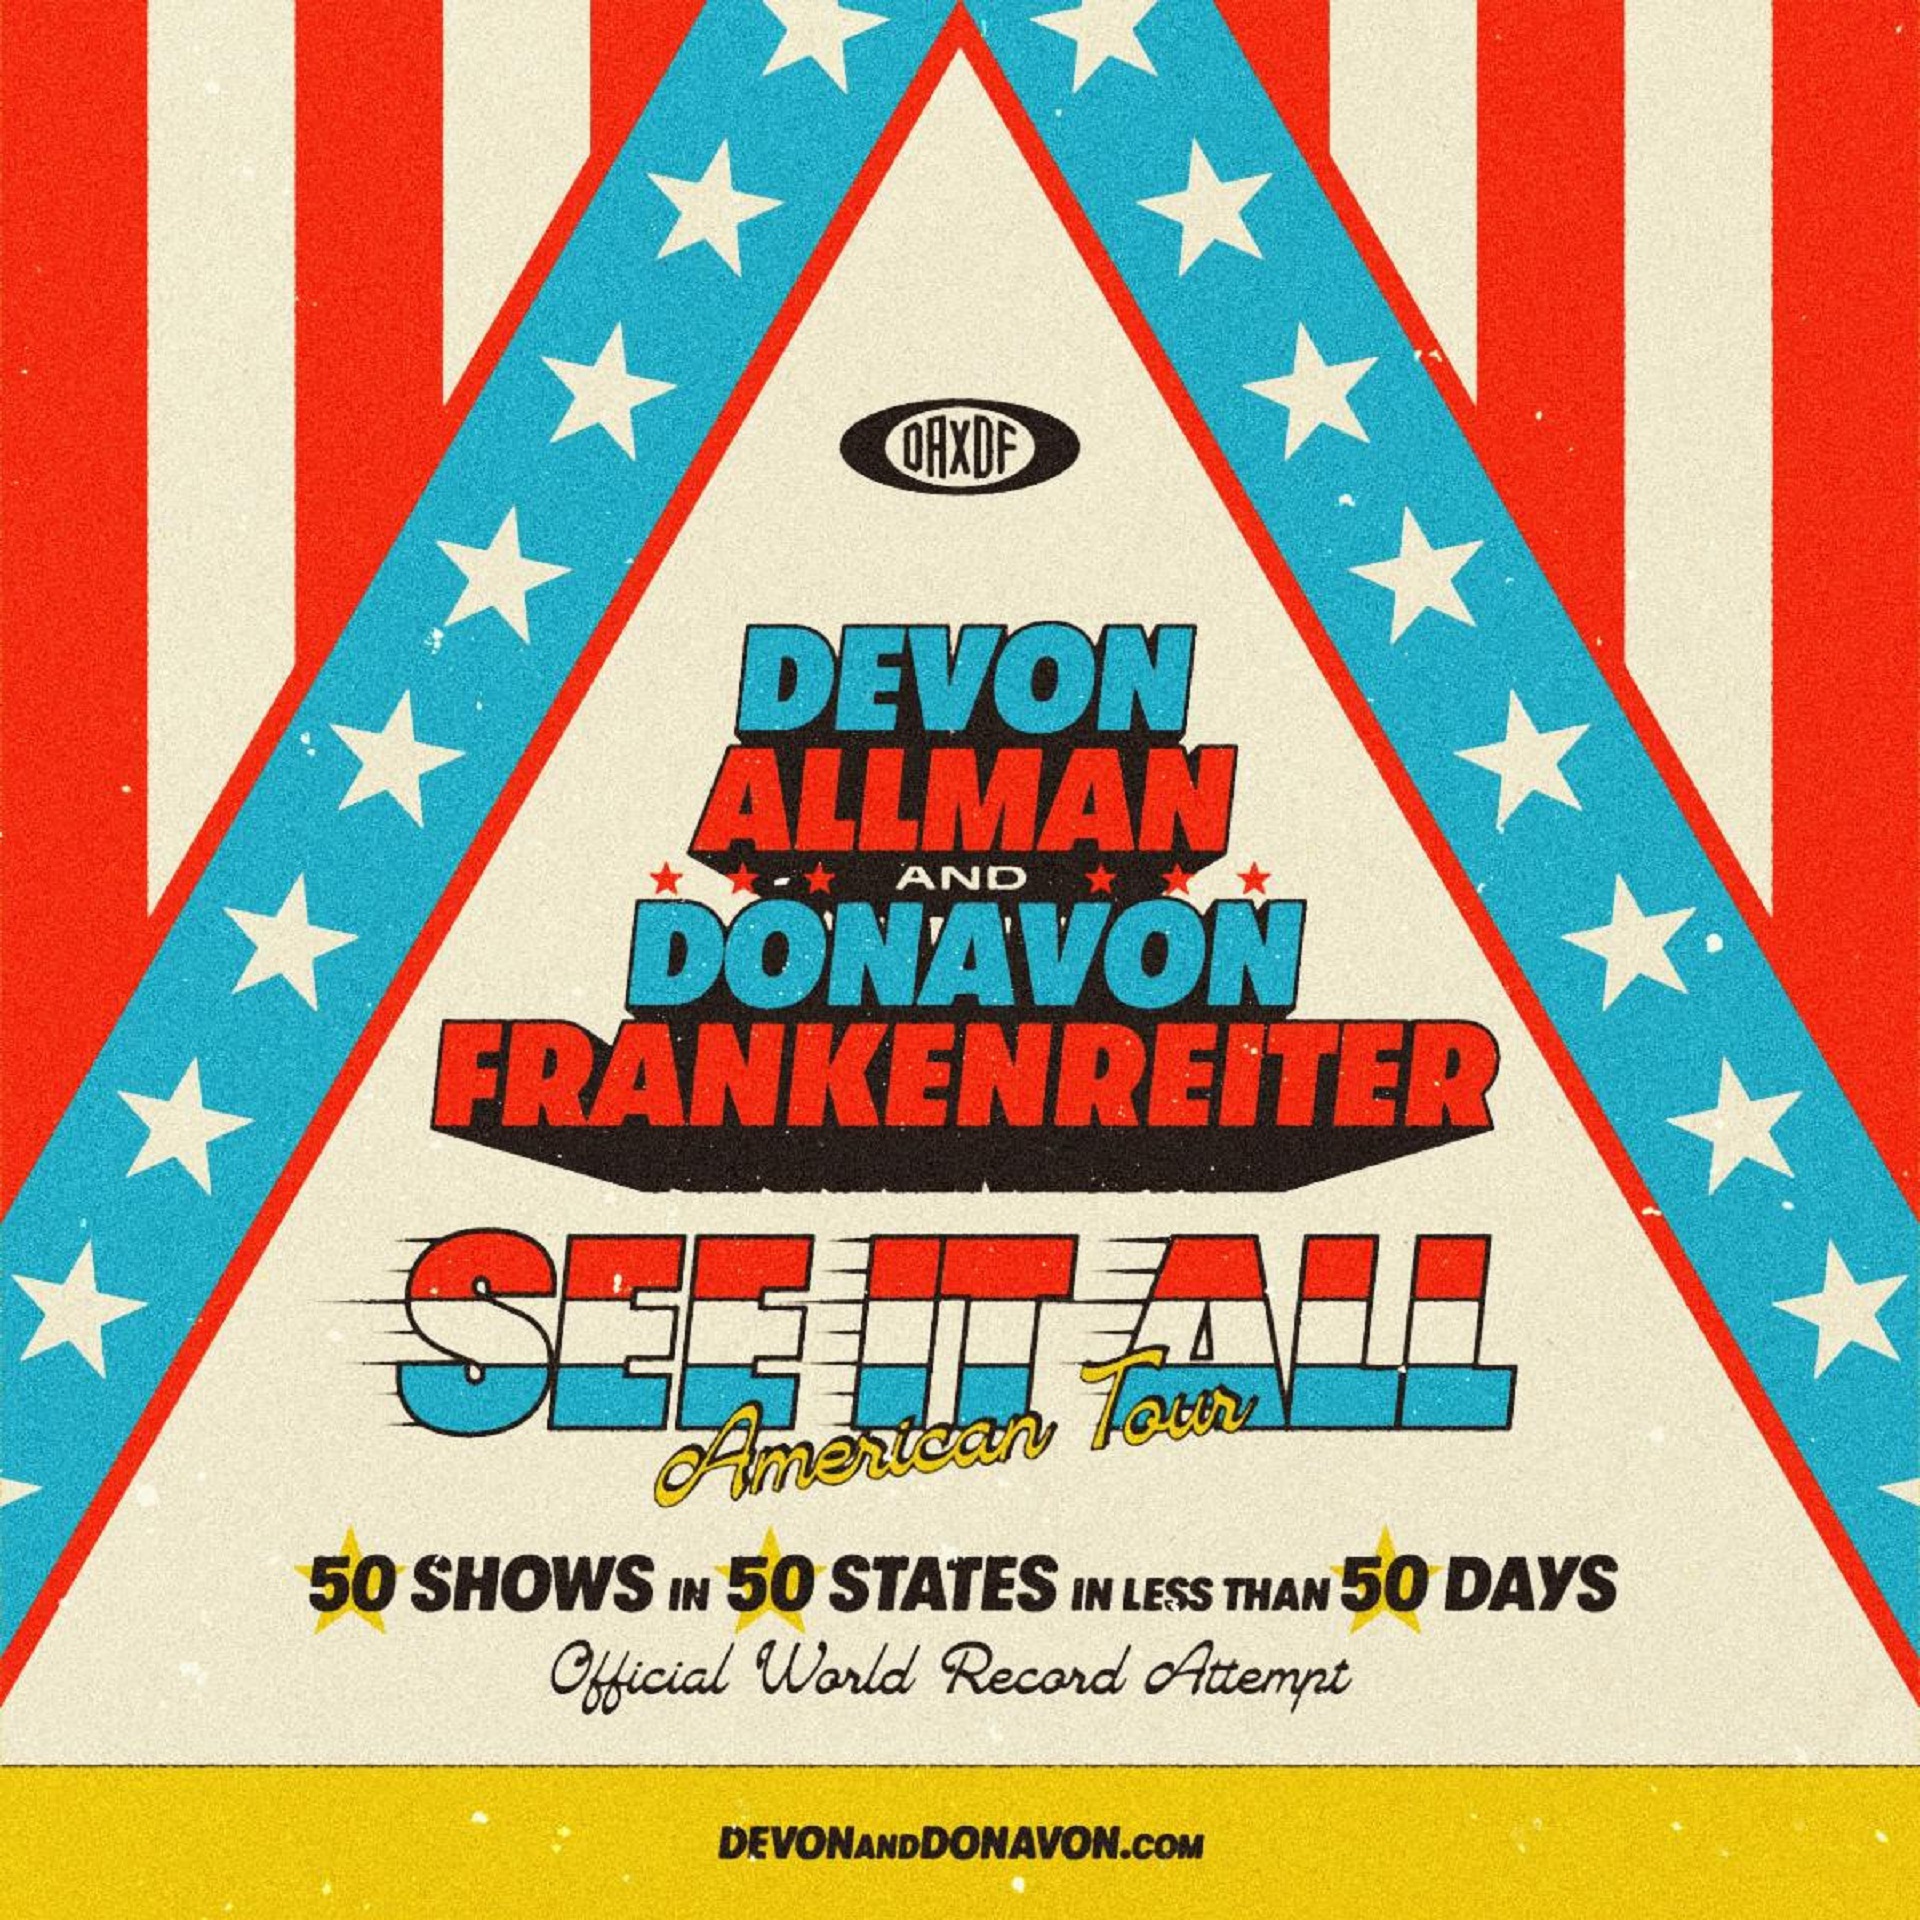 Devon Allman & Donavon Frankenreiter Announce See It All American Tour